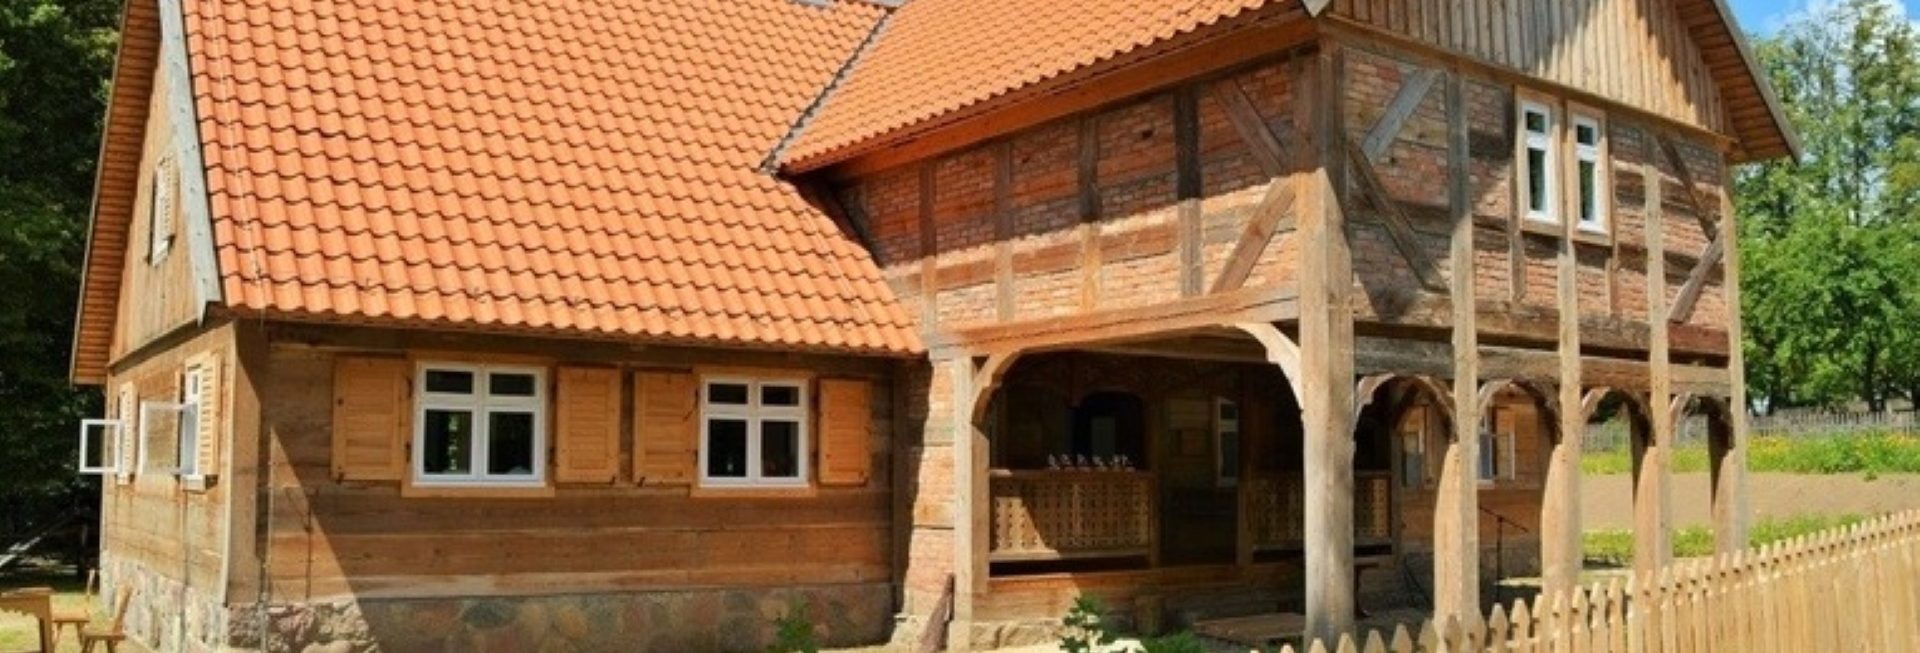 Muzeum Budownictwa Ludowego - Skansen w Olsztynku. Na zdjęciu zabytkowa chata z drewna.  